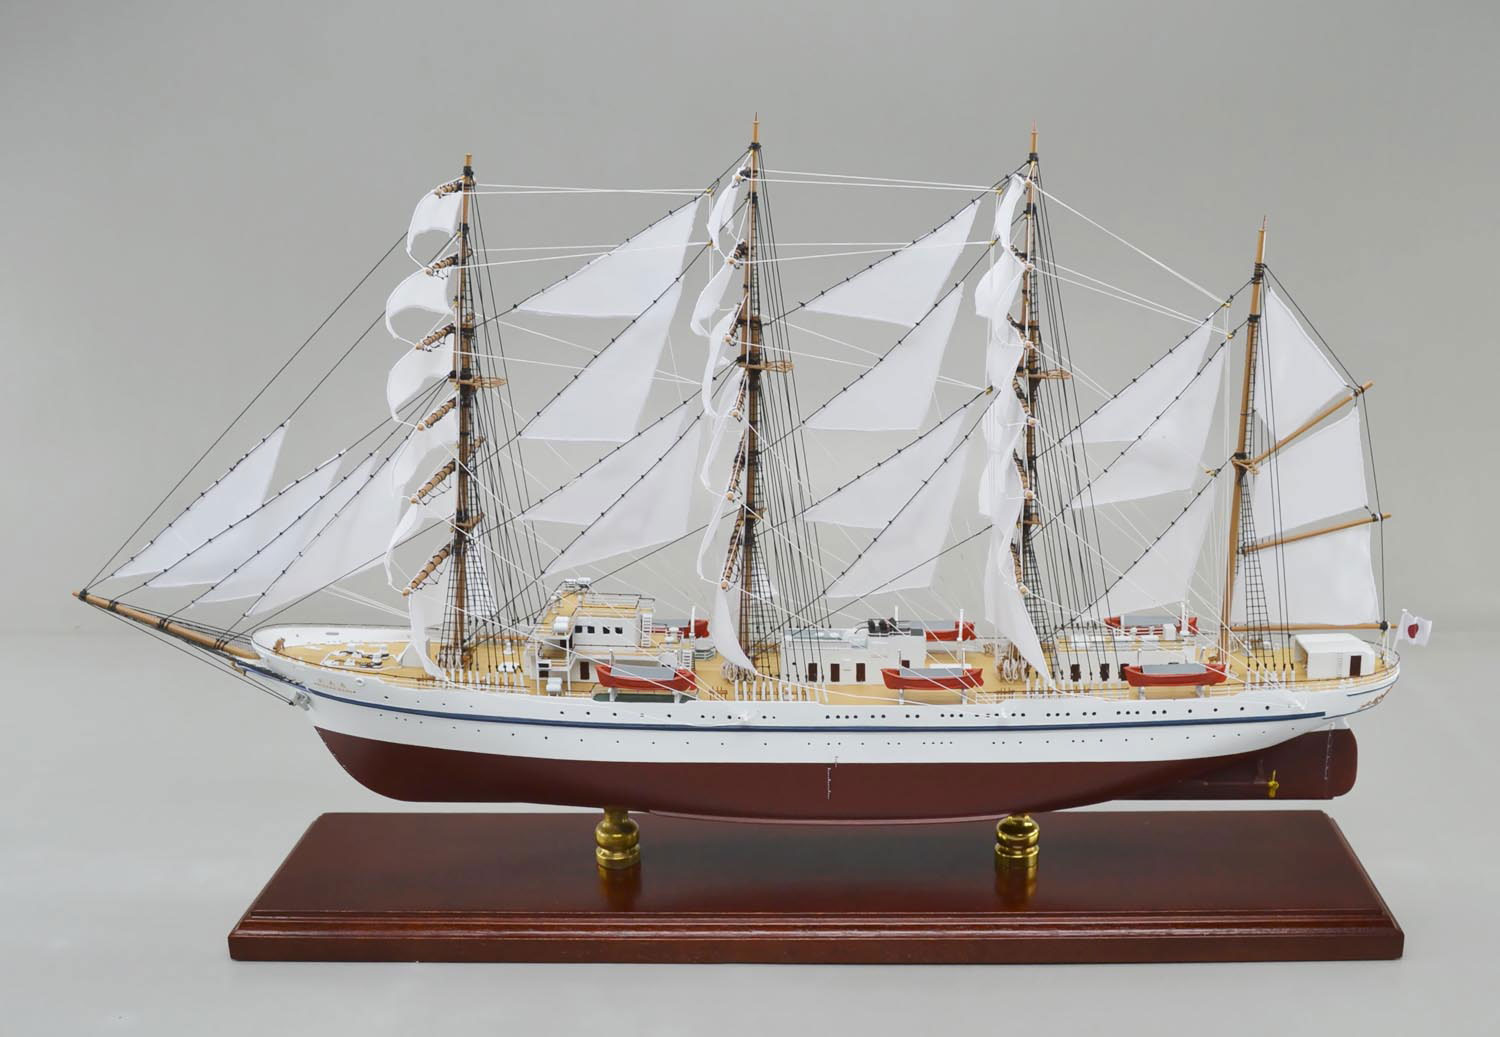 日本丸 帆船 精密帆船模型 ハンドメイド木製帆船模型 モデルシップ、精密模型製作・販売の専門店 ウッドマンクラブ